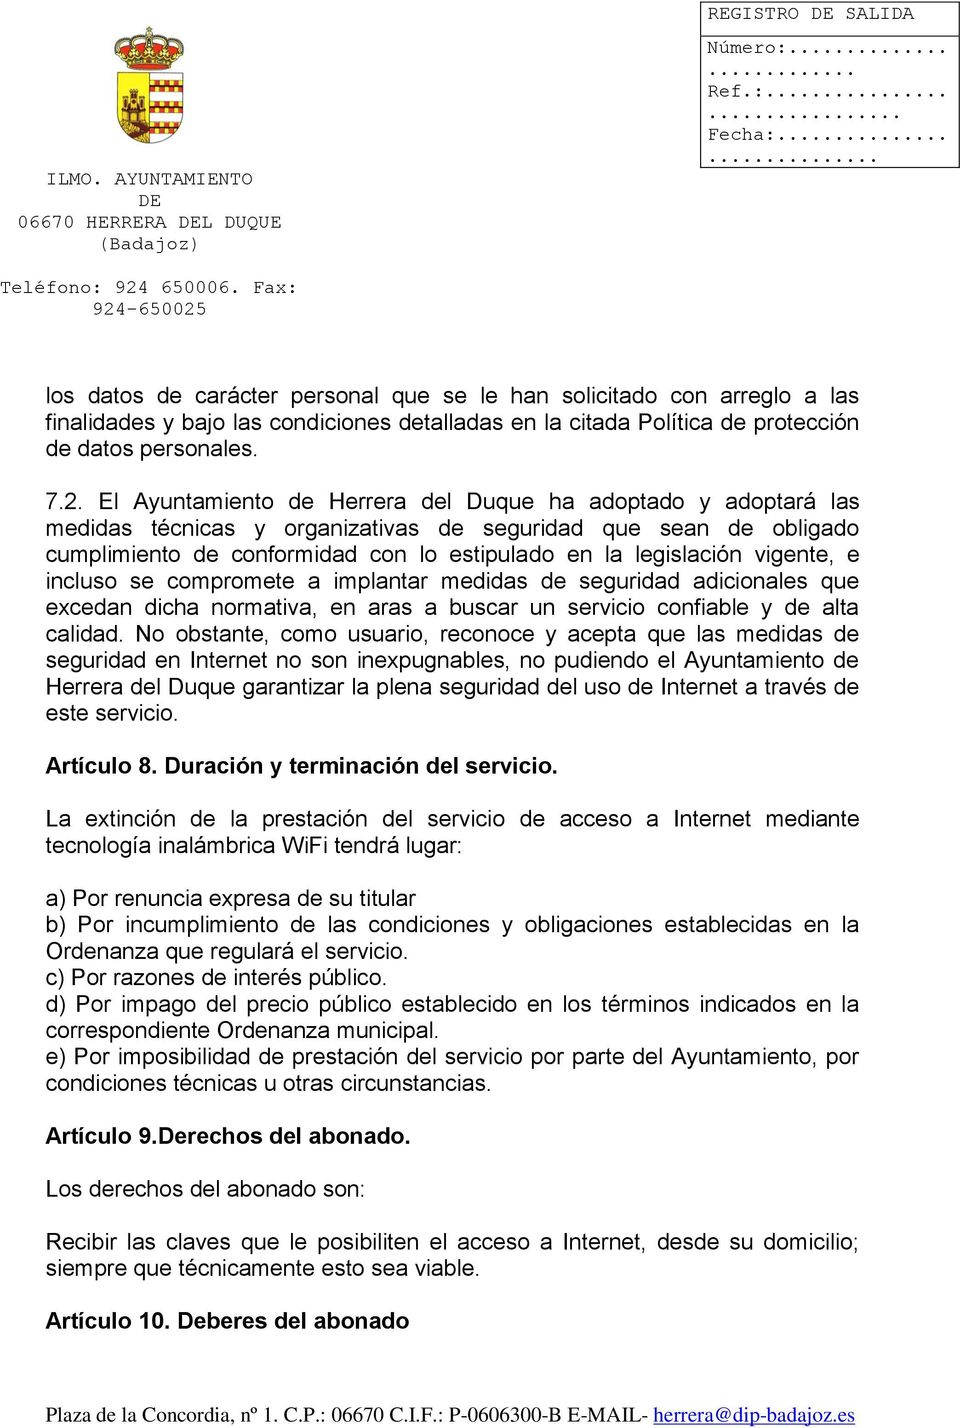 El Ayuntamiento de Herrera del Duque ha adoptado y adoptará las medidas técnicas y organizativas de seguridad que sean de obligado cumplimiento de conformidad con lo estipulado en la legislación